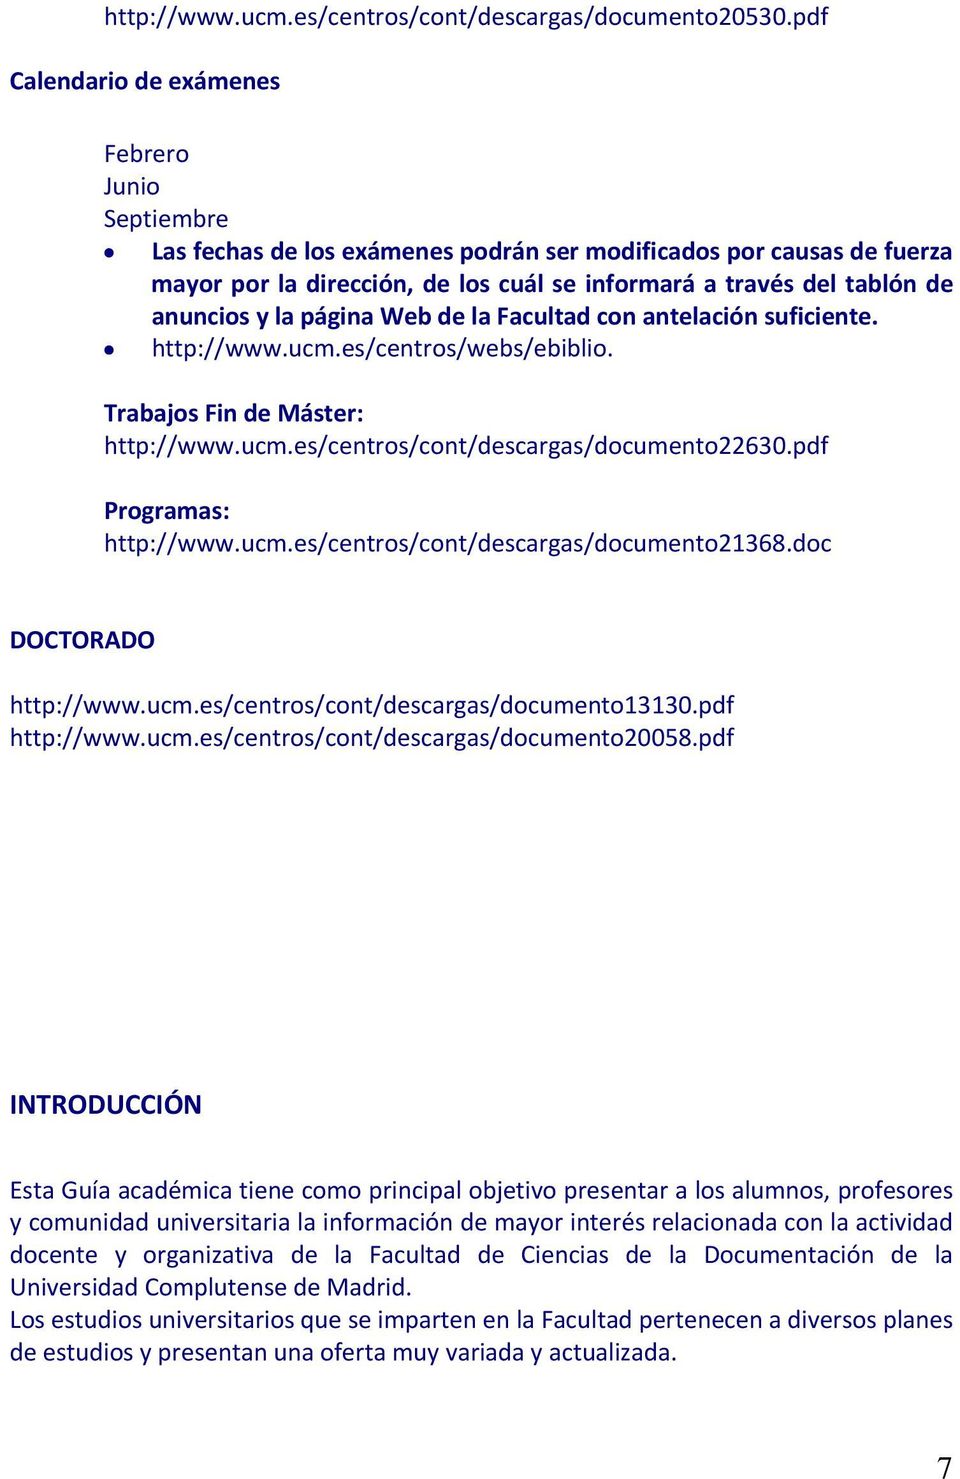 anuncios y la página Web de la Facultad con antelación suficiente. http://www.ucm.es/centros/webs/ebiblio. Trabajos Fin de Máster: http://www.ucm.es/centros/cont/descargas/documento22630.